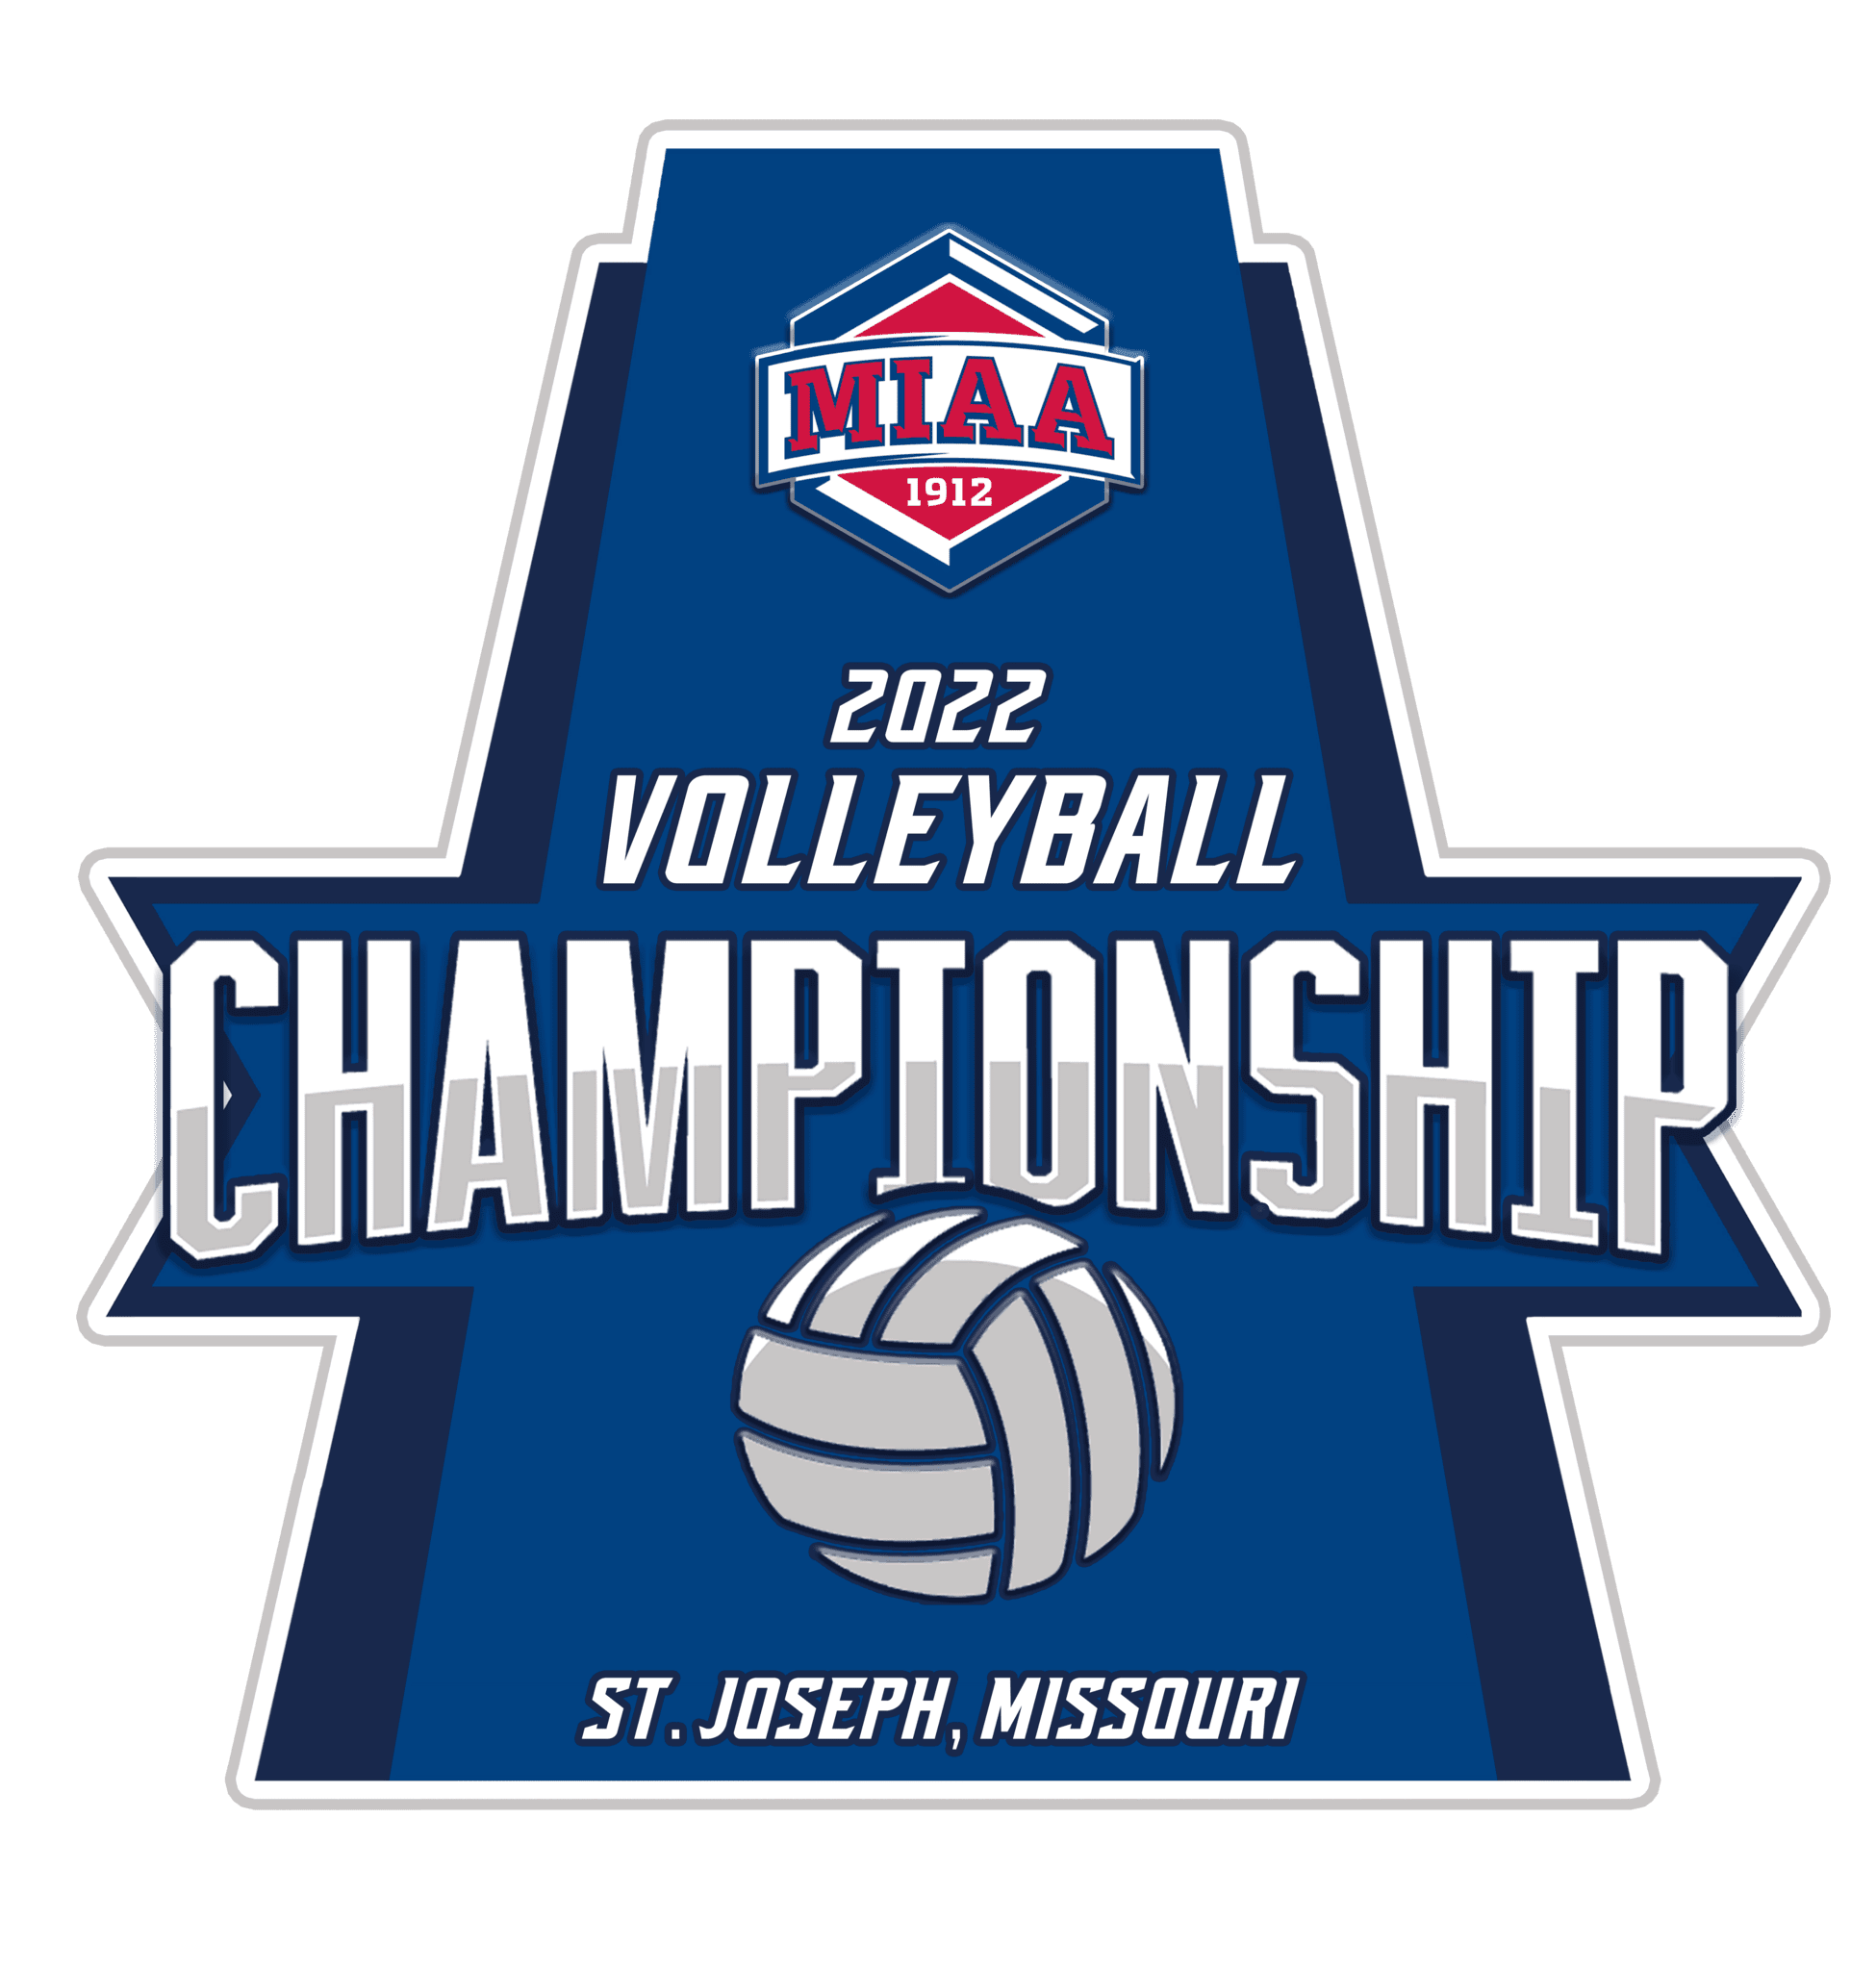 MIAA Volleyball Championship logo St. Joseph, MO Convention